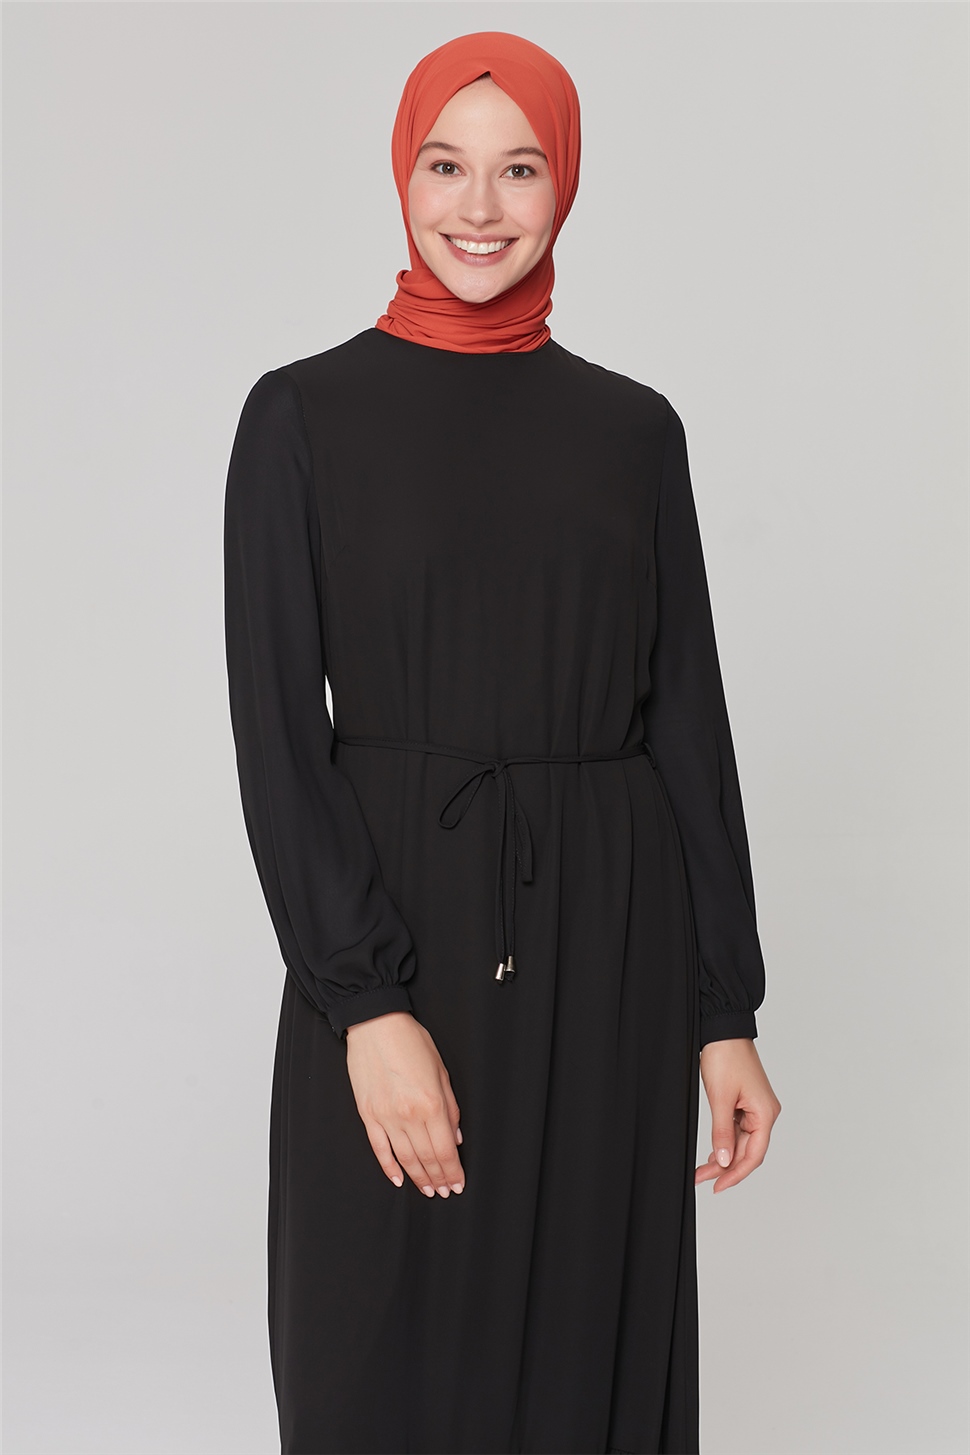 Armine Trend Elbise 20Ya9155 Siyah - ARMİNE | Hayatınıza Artı Değer Katar!